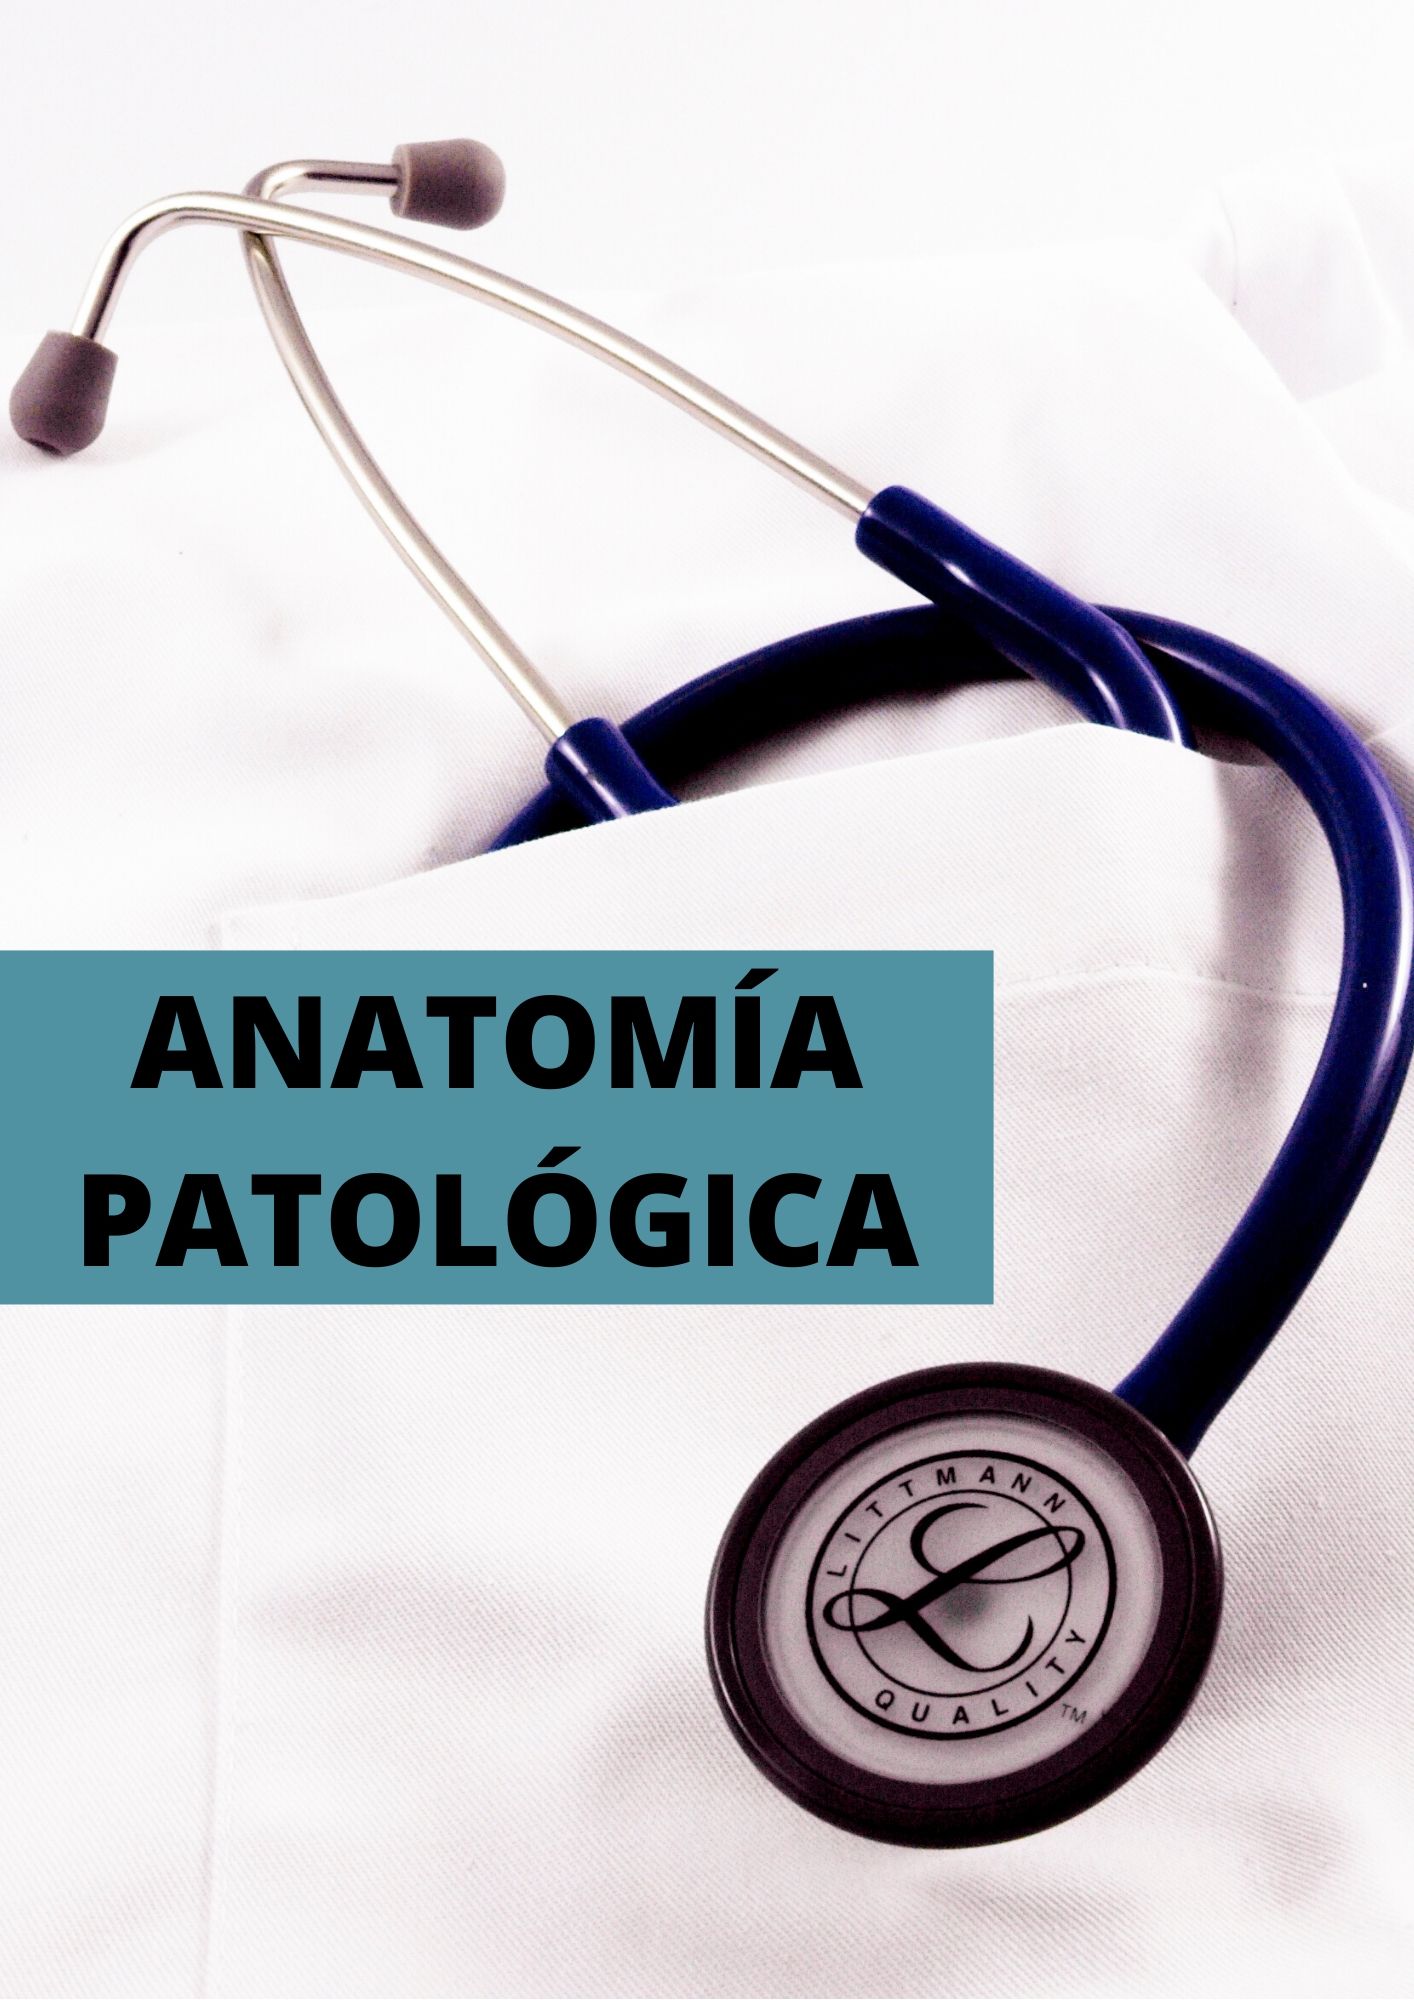 resum anatomia patologica ESP